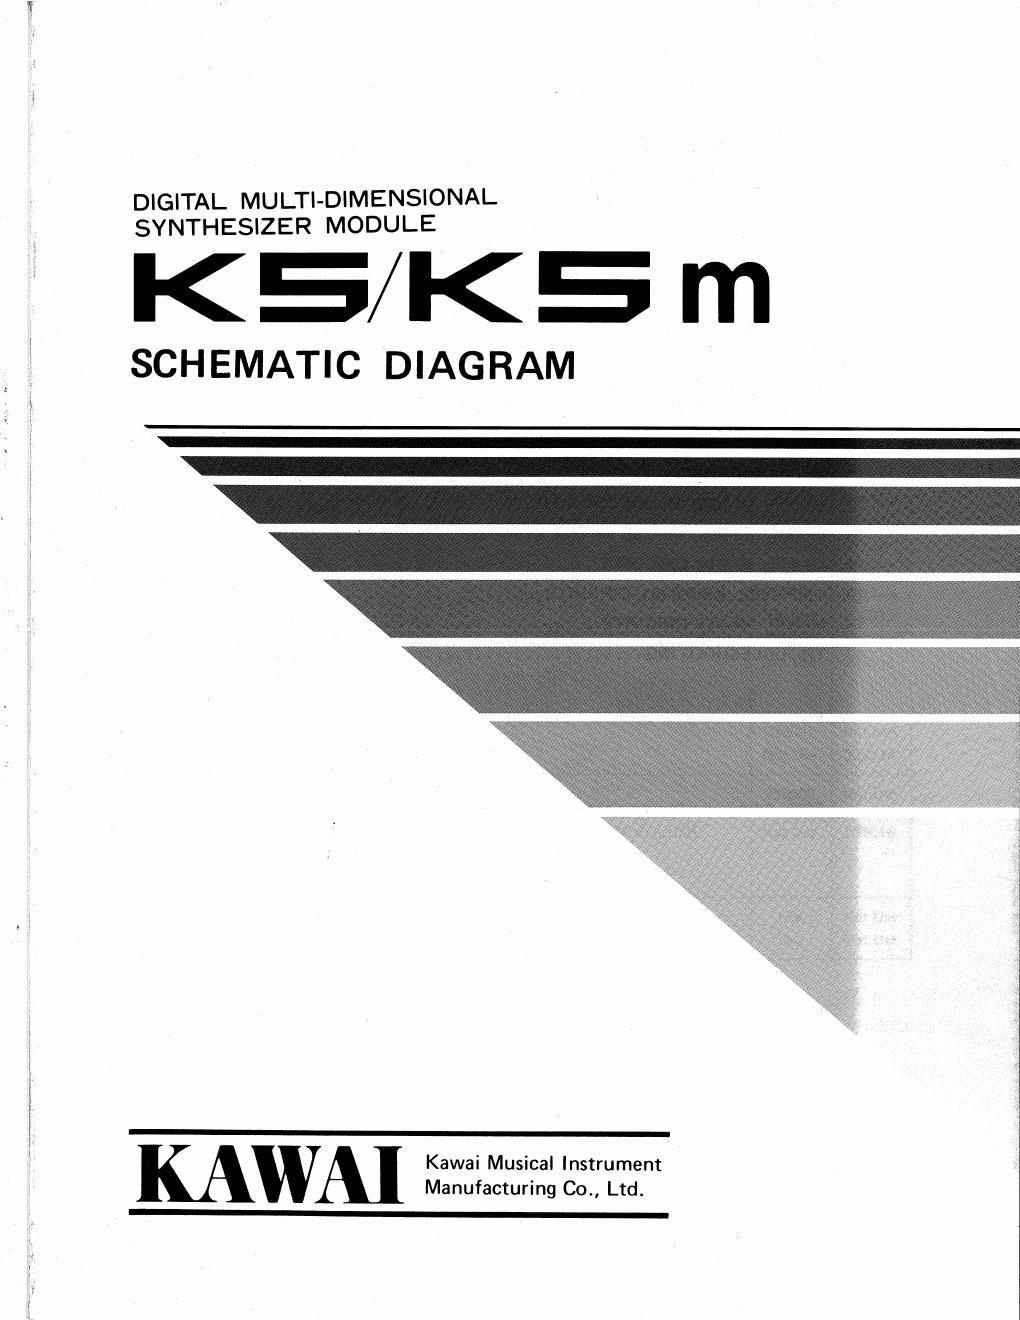 kawai k5 k5m schematics and pcb